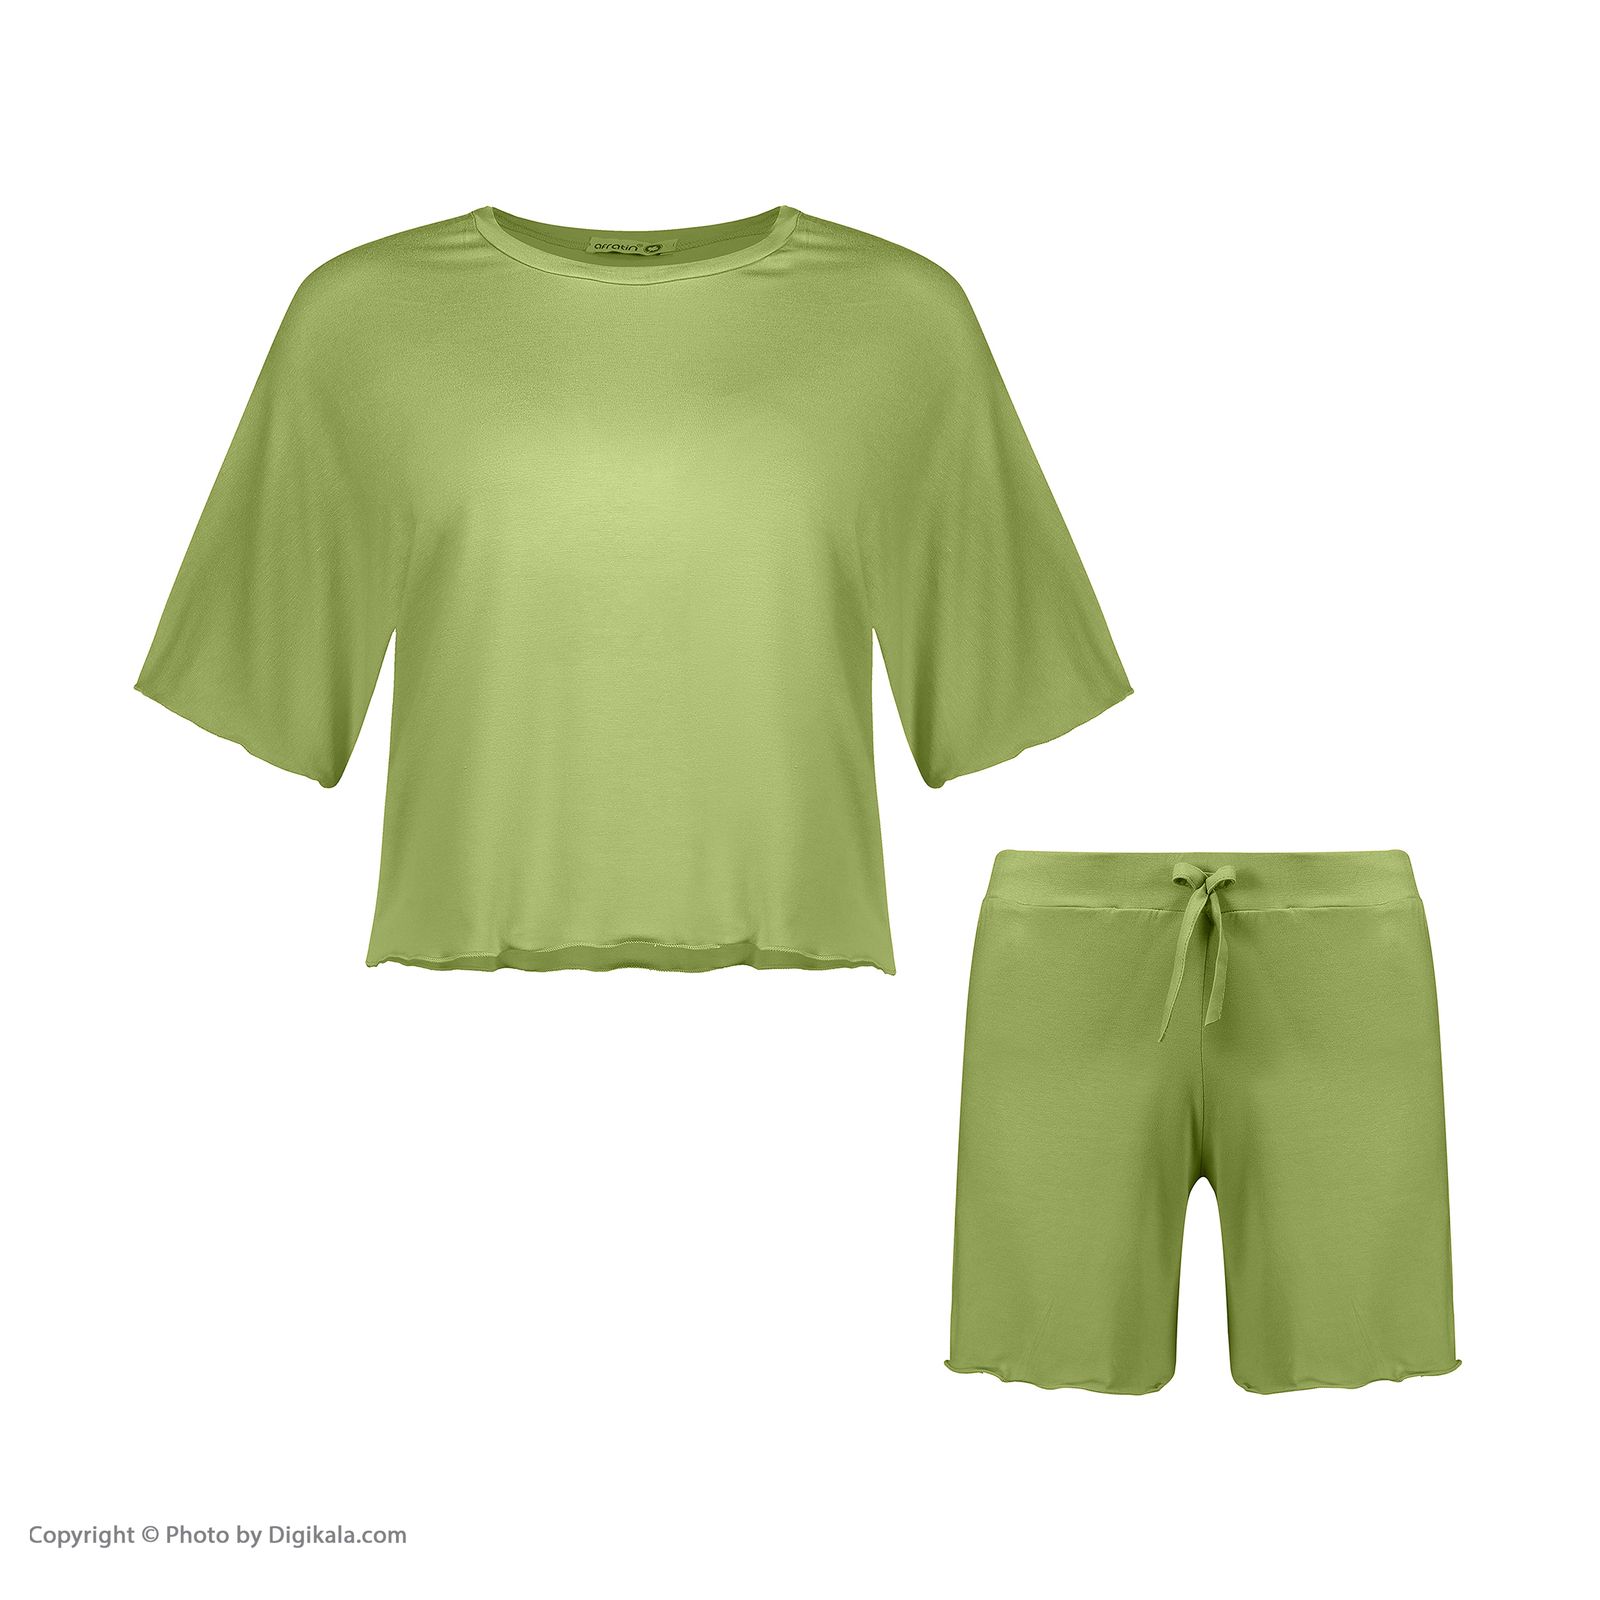 ست تیشرت و شلوارک زنانه افراتین مدل آرام رنگ سبز -  - 2